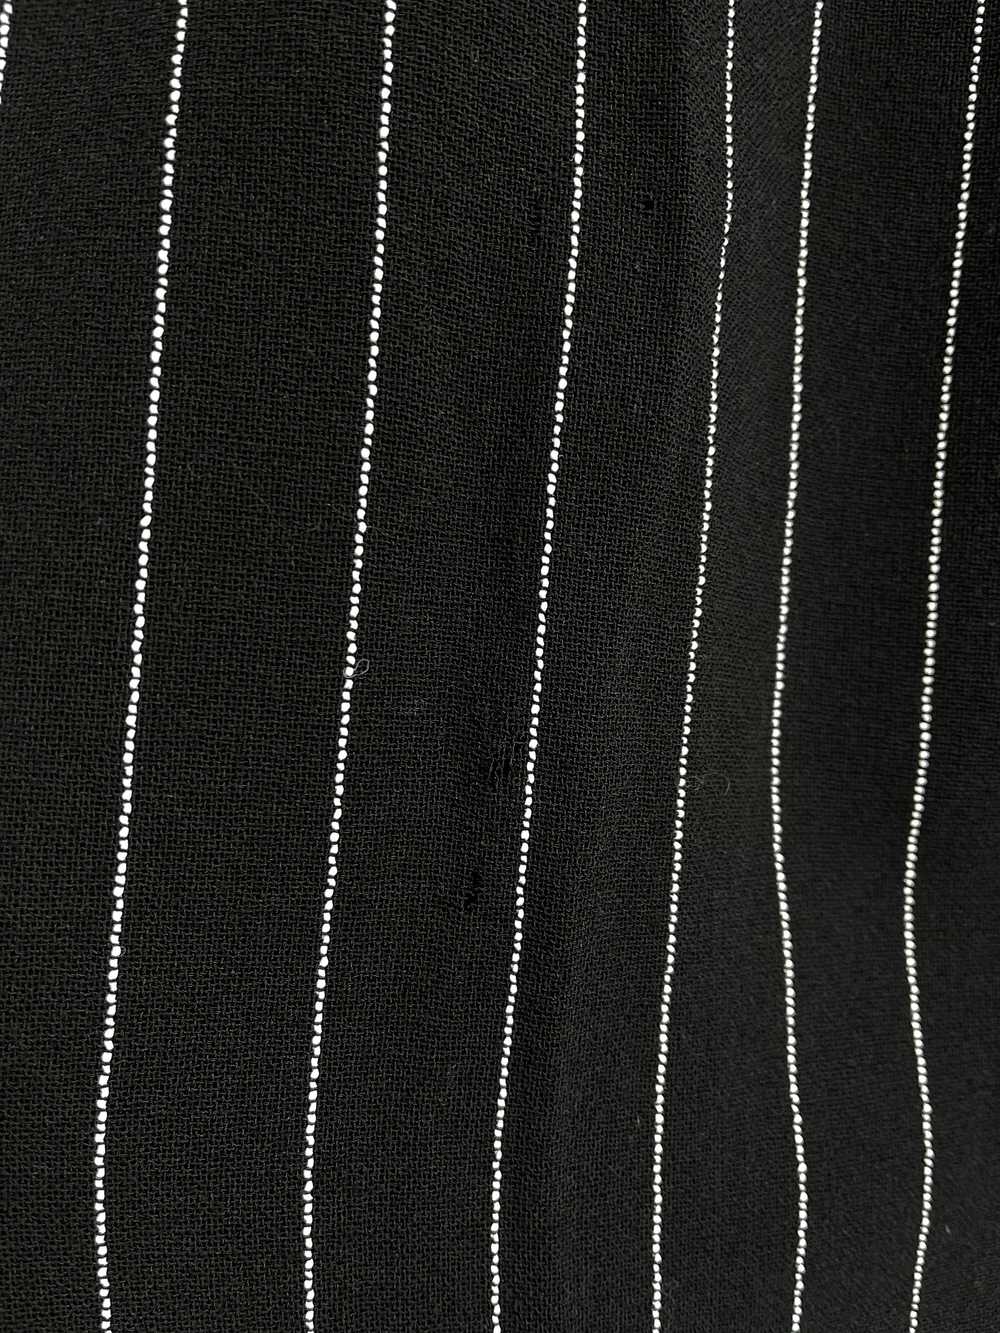 Vintage Slinky Pinstripe Wool Trousers - W26 - image 9